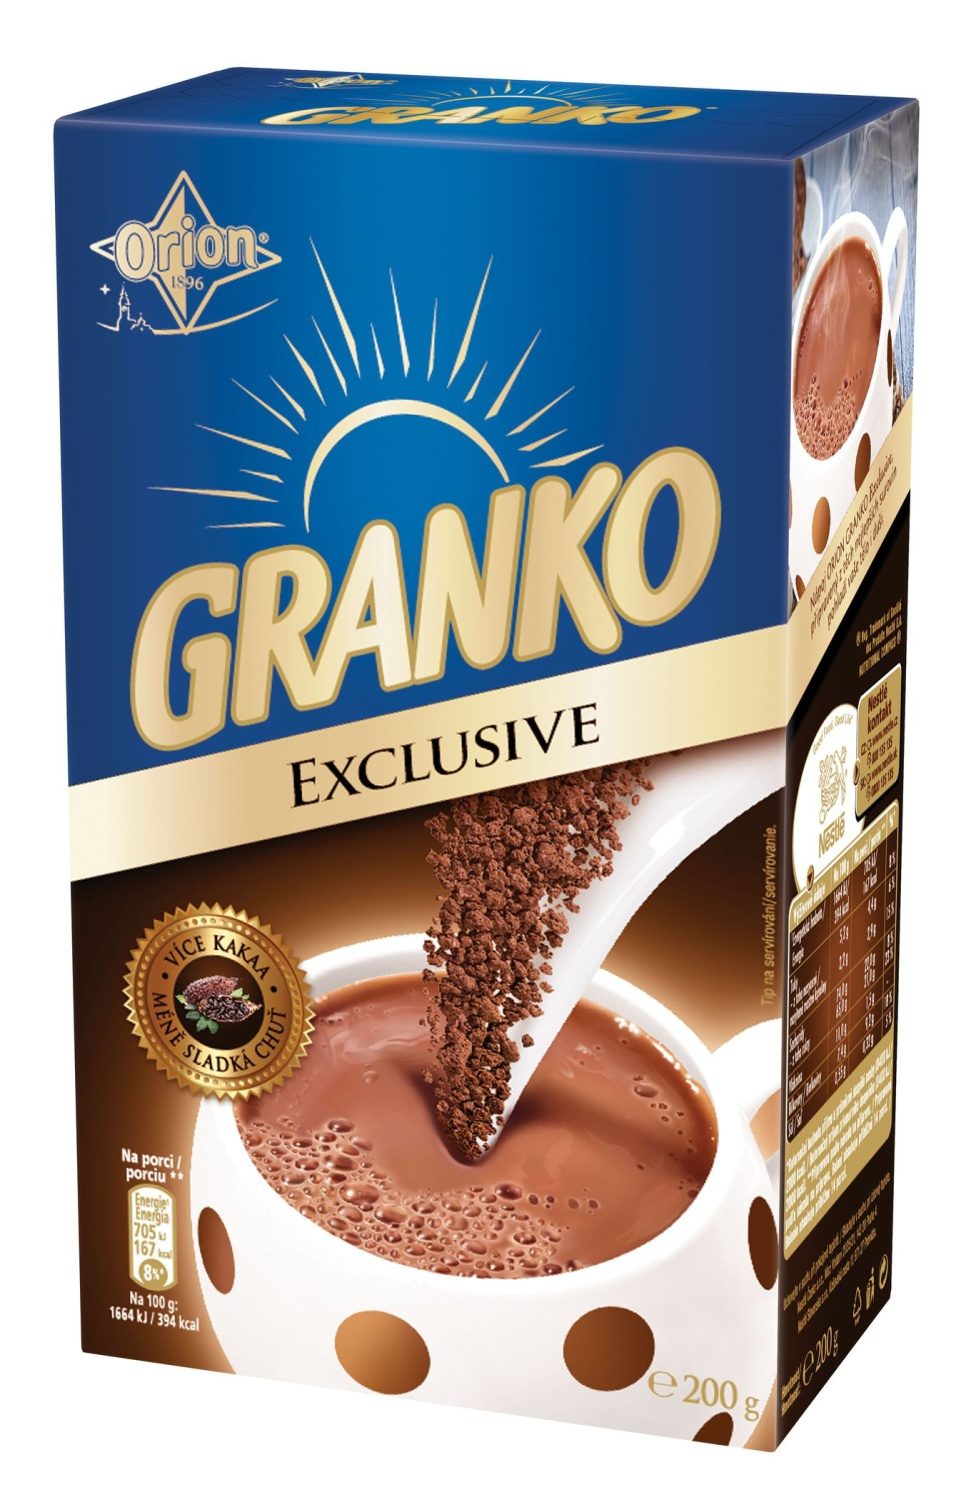 Co obsahuje Granko?